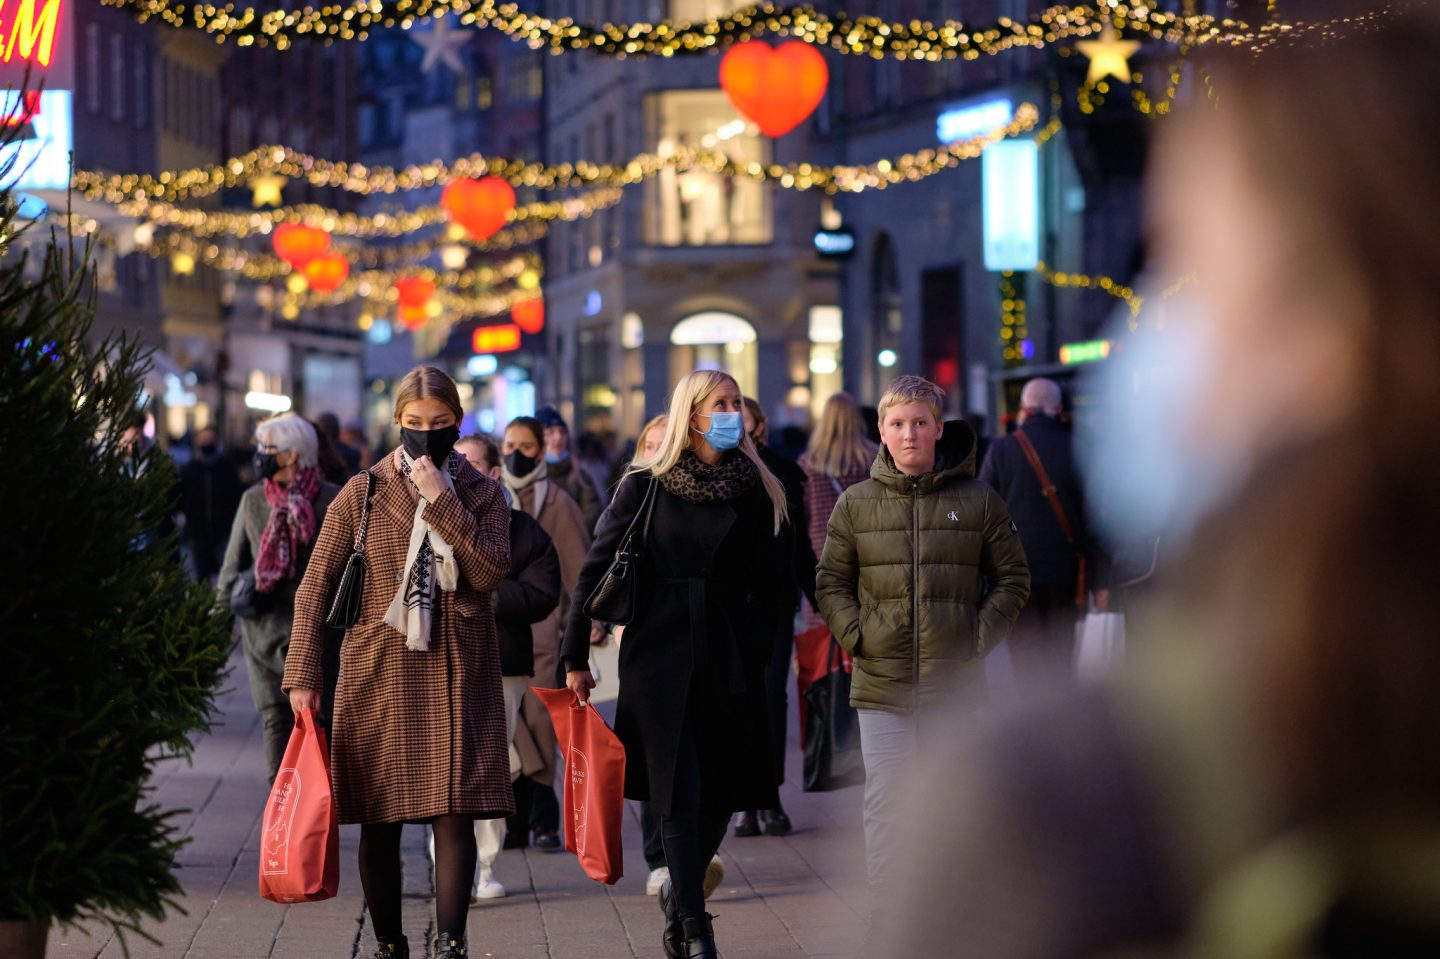 Jak wesprzeć polską gospodarkę przed Świętami? W roku pandemii kupujmy prezenty bez pośredników